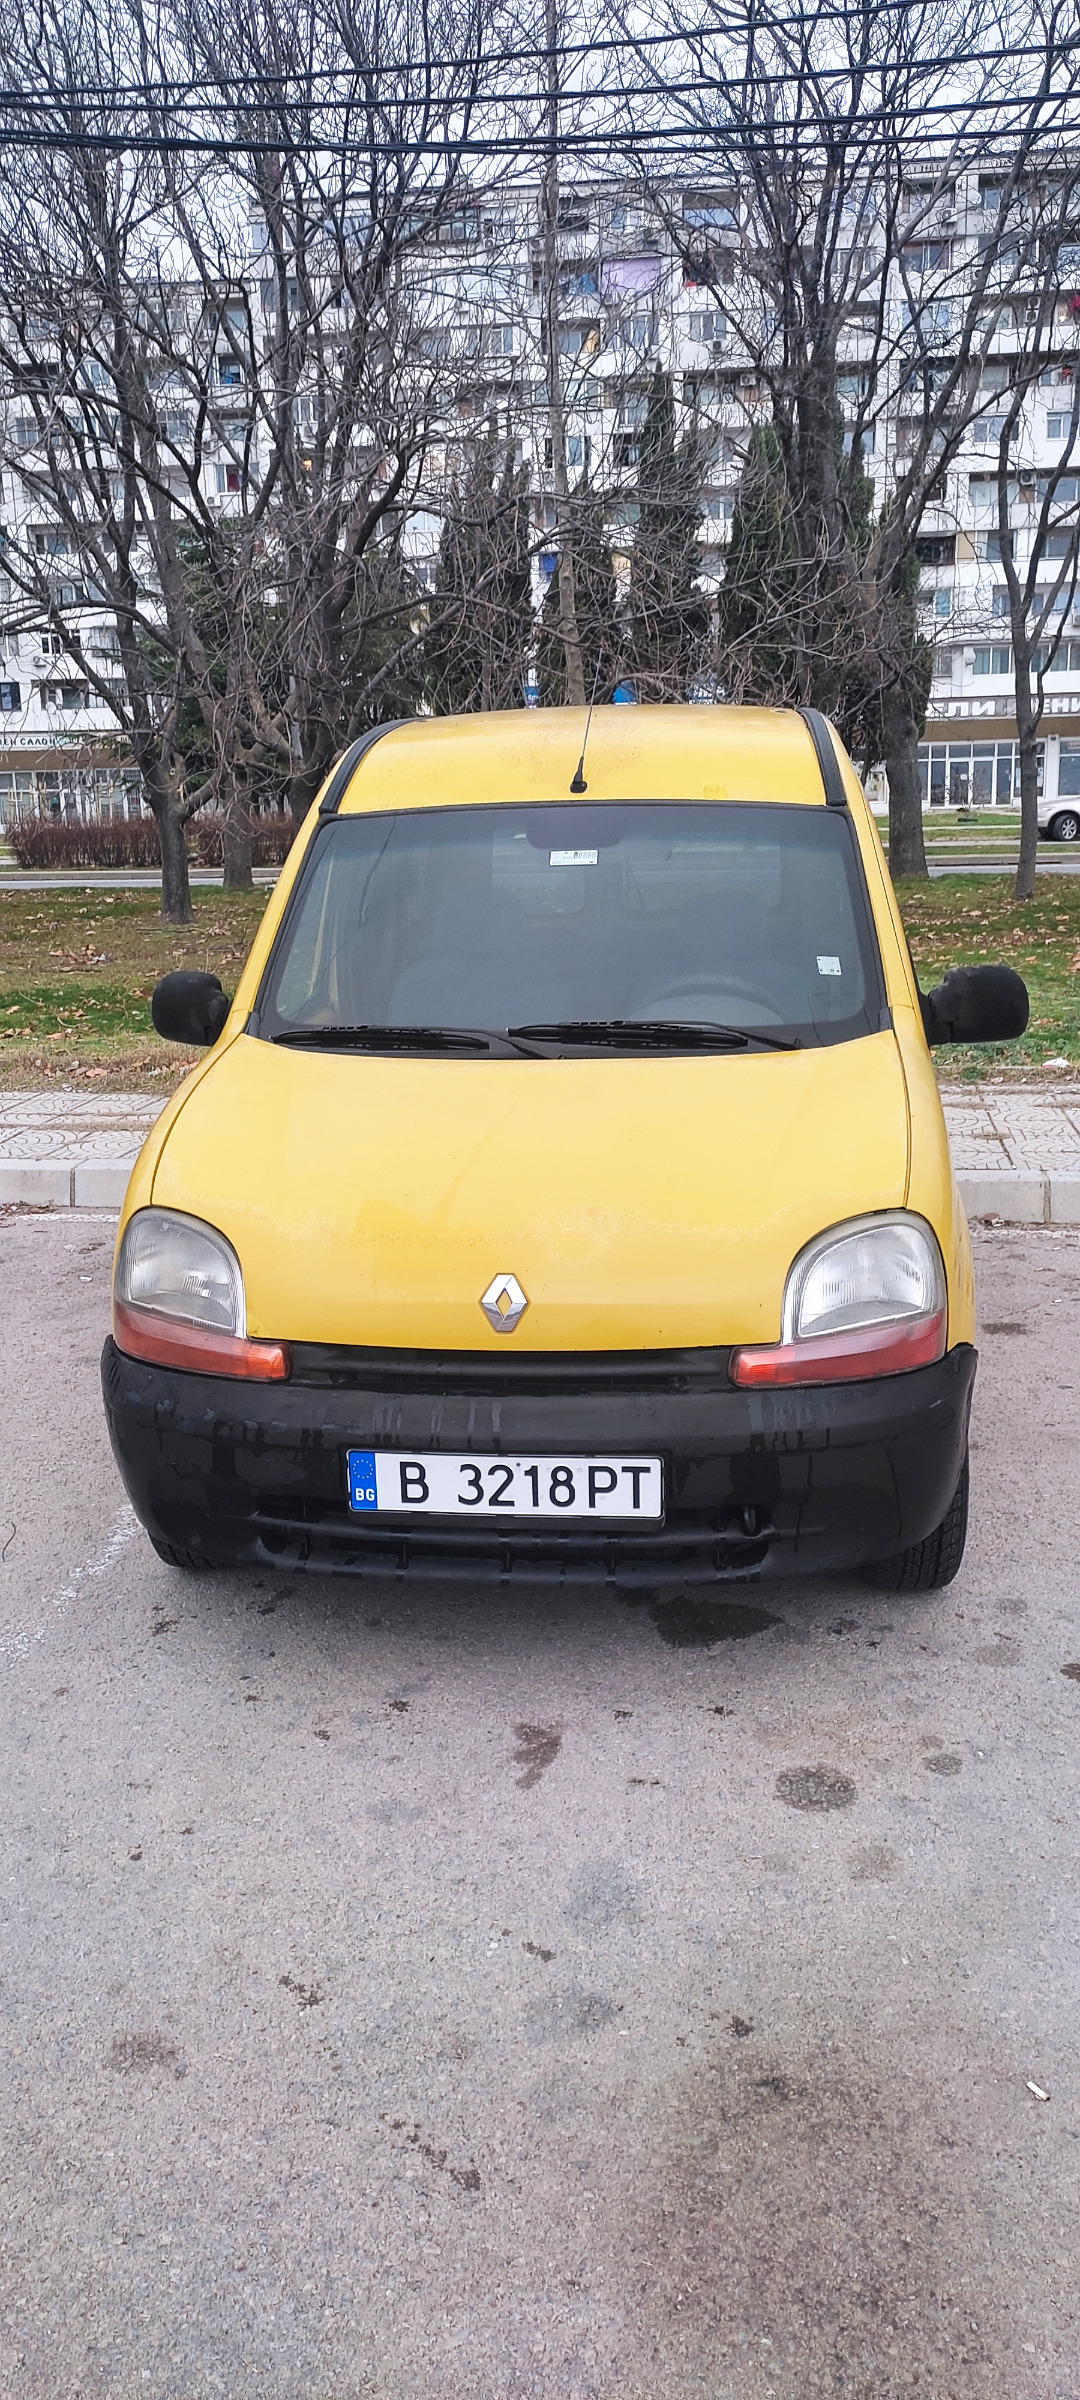 Renault Kangoo  - изображение 1